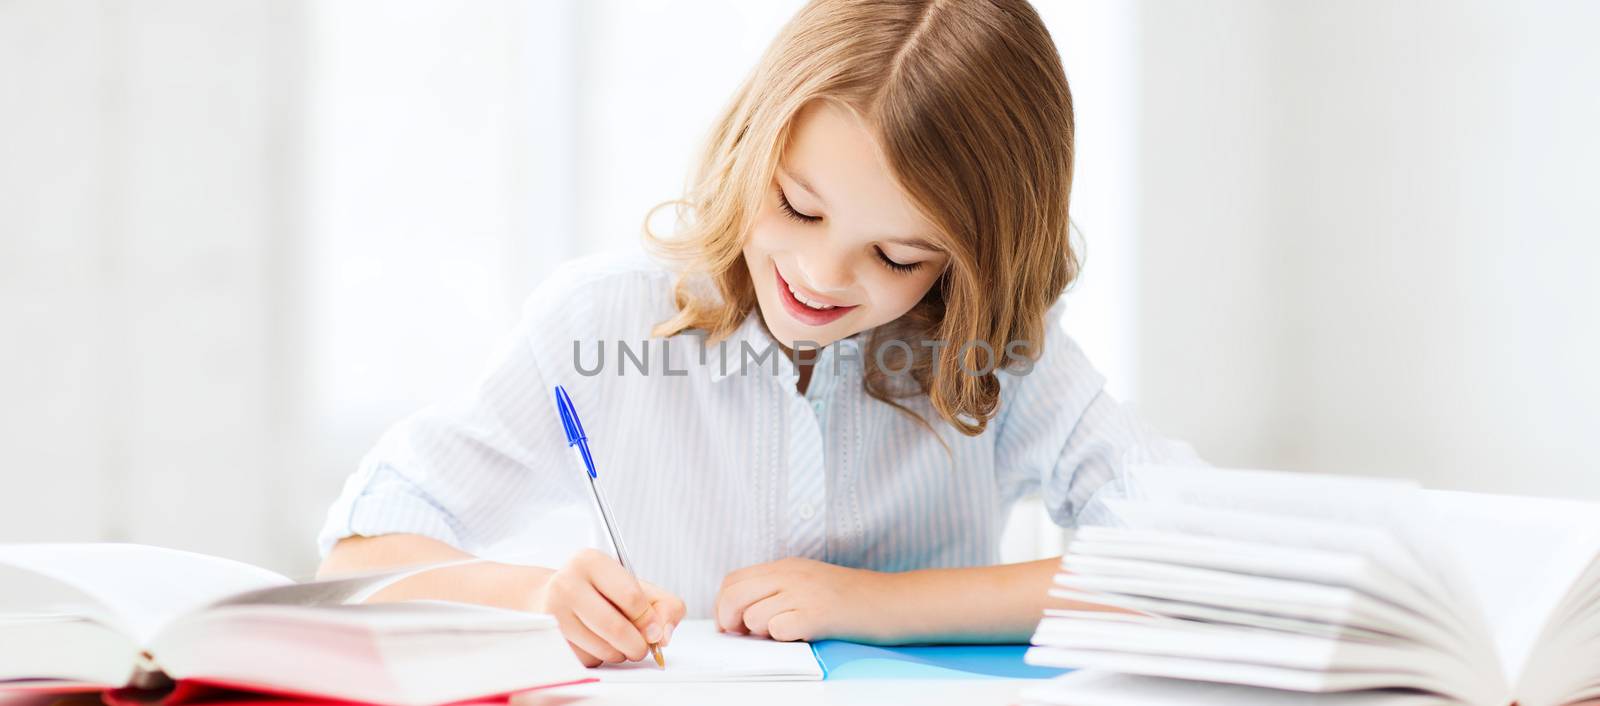 student girl studying at school by dolgachov